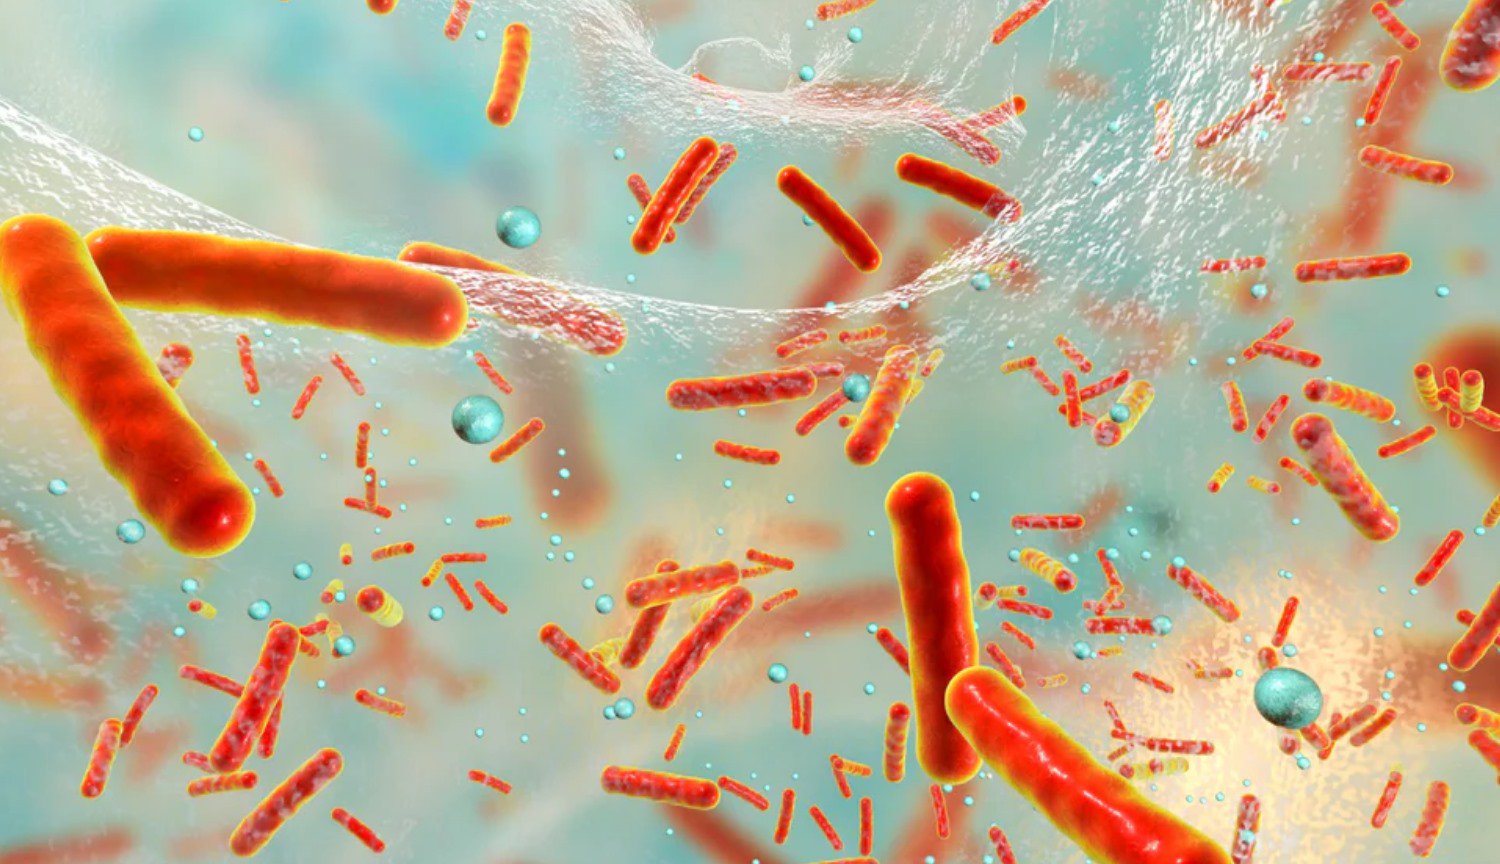 ثبت: البكتيريا للتضحية بأنفسهم لحماية المستعمرة من المضادات الحيوية